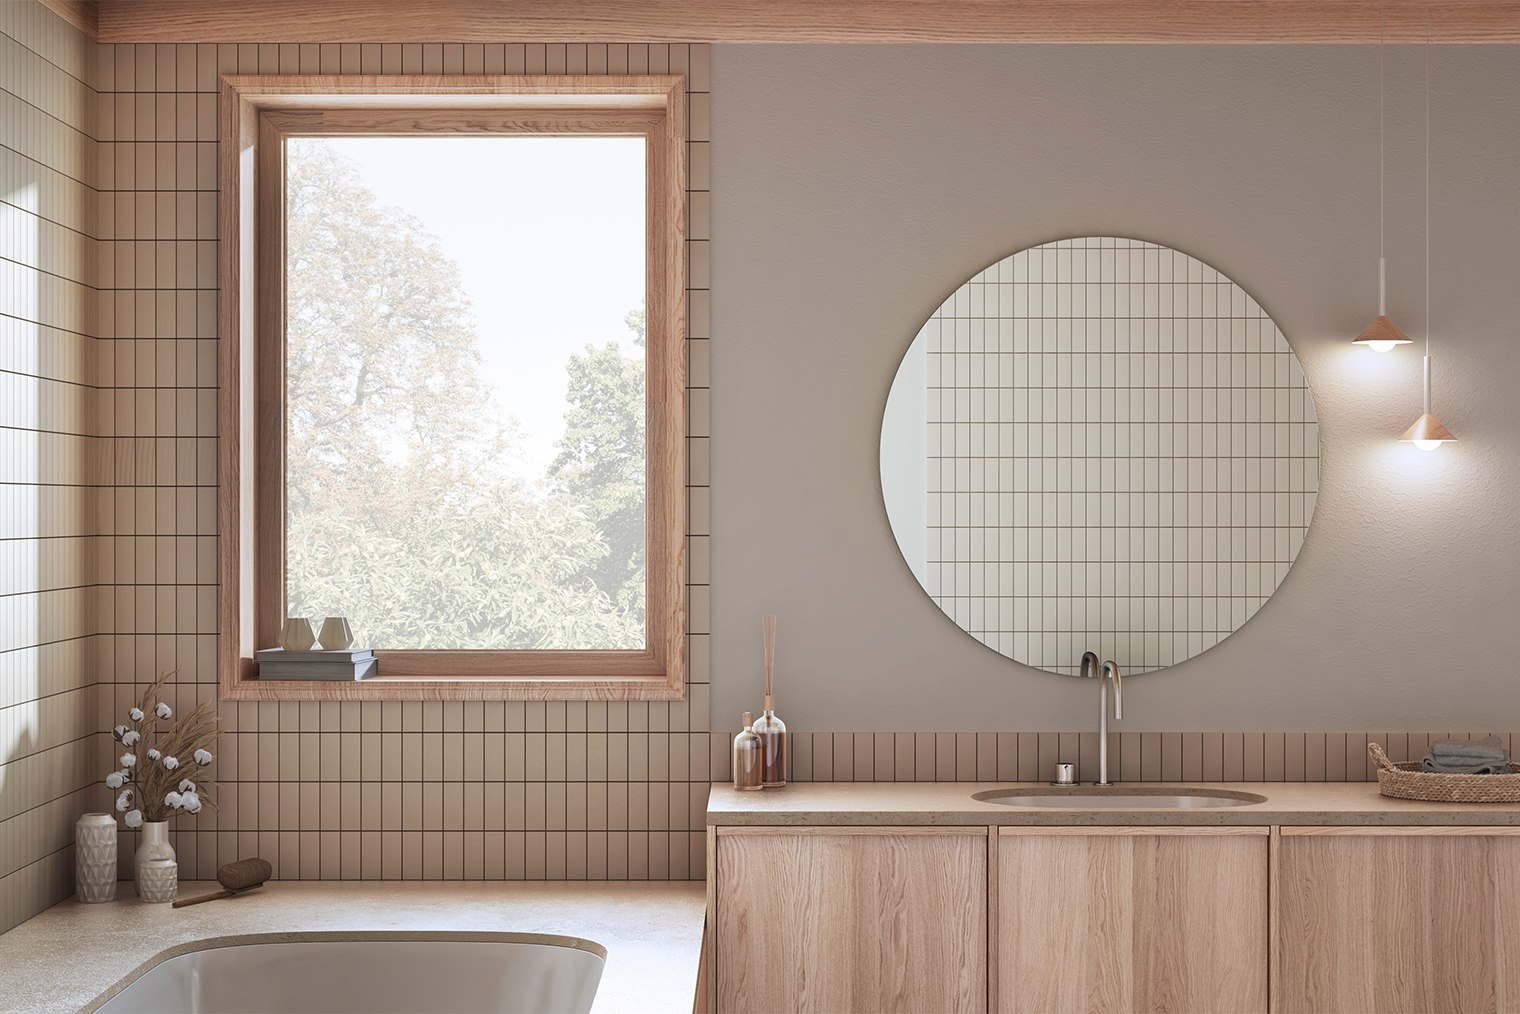 Узкая плитка, уложенная вертикально, с контрастной затиркой, напоминает о прямоугольниках на японских ширмах и поэтому придает японский колорит в ванной в стиле джапанди. Фотография: Archi_Viz / Shutterstock